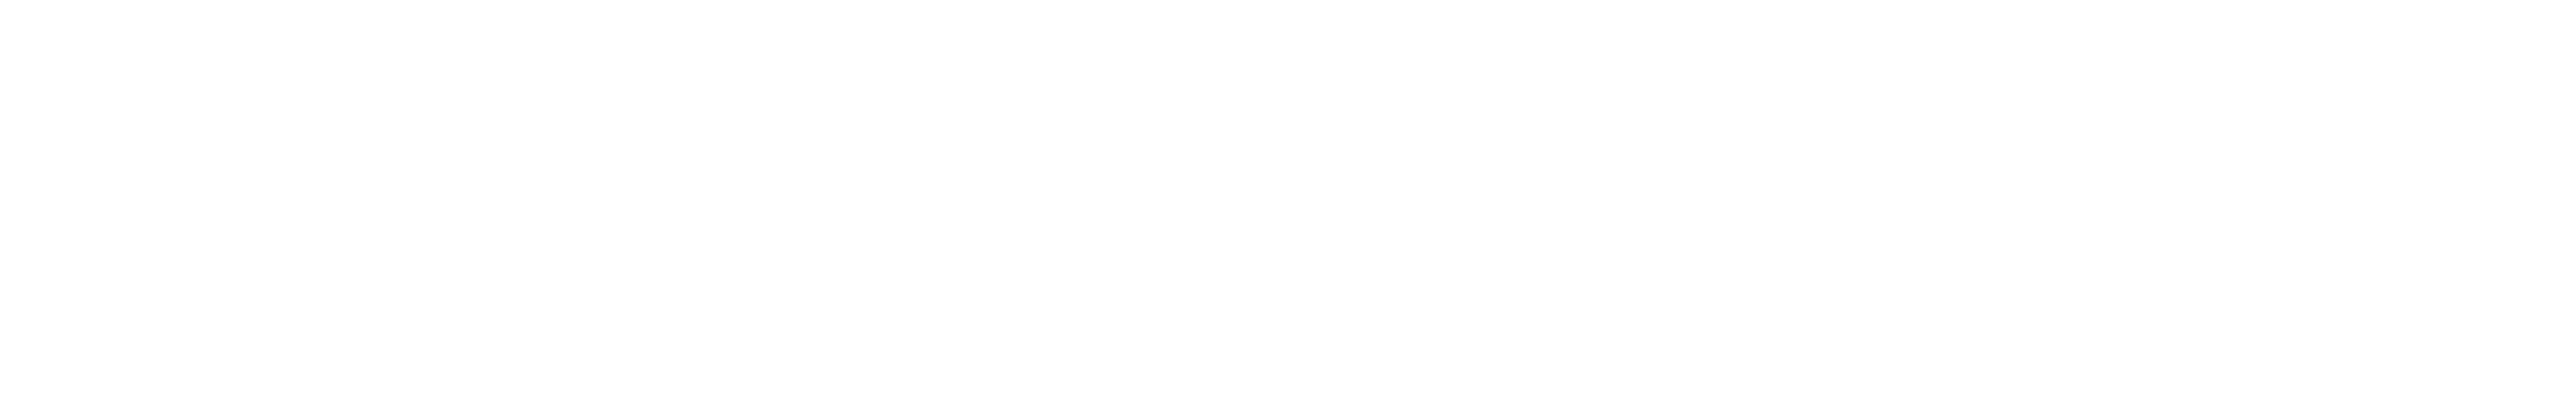 Mobaro-Retail_Logo_NEG.png